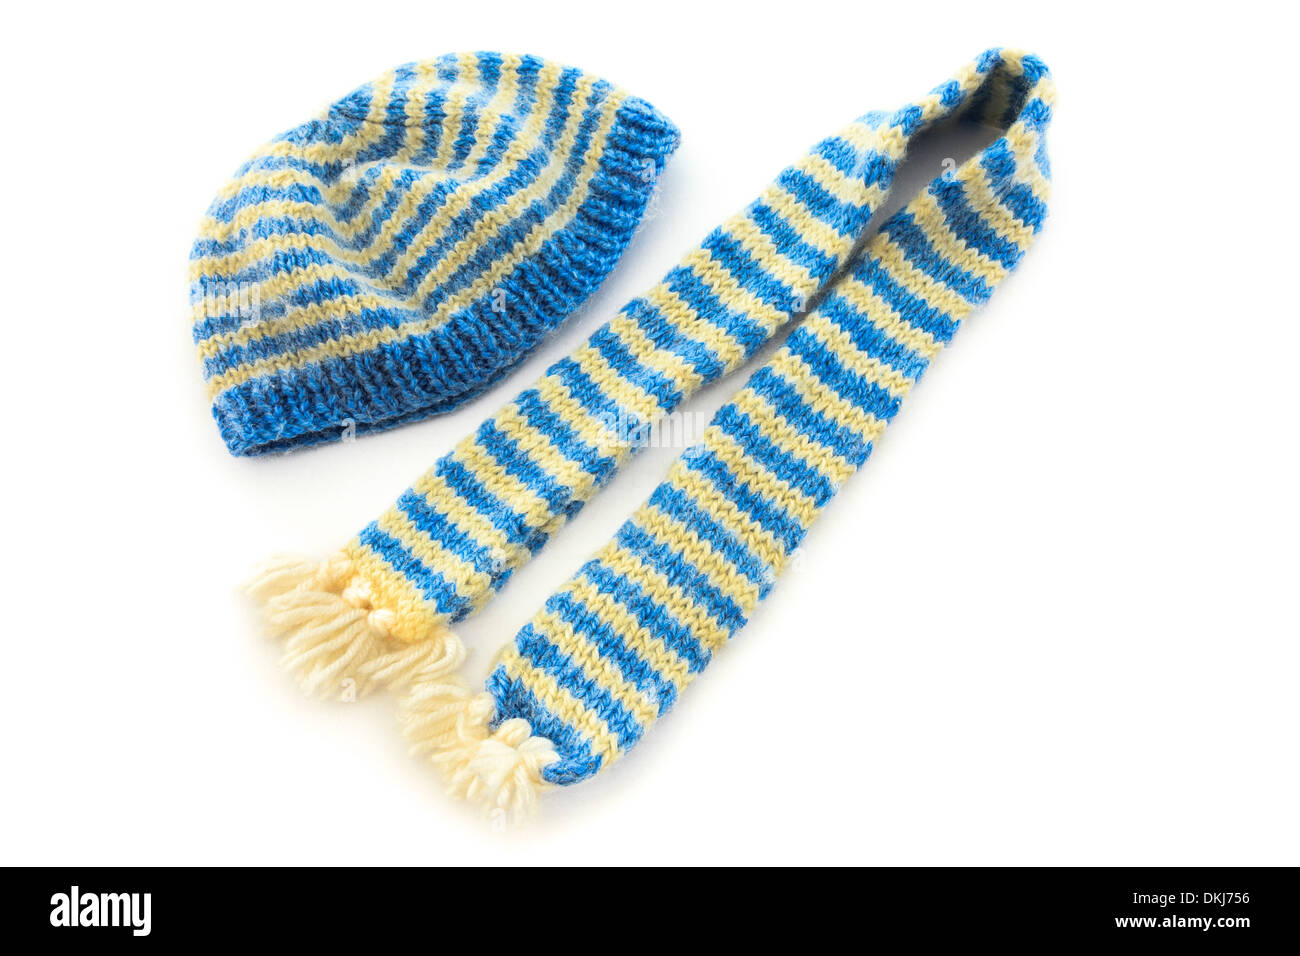 A strisce blu e gialle in maglia a mano wooly sciarpa e matching hat isolato su uno sfondo bianco Foto Stock